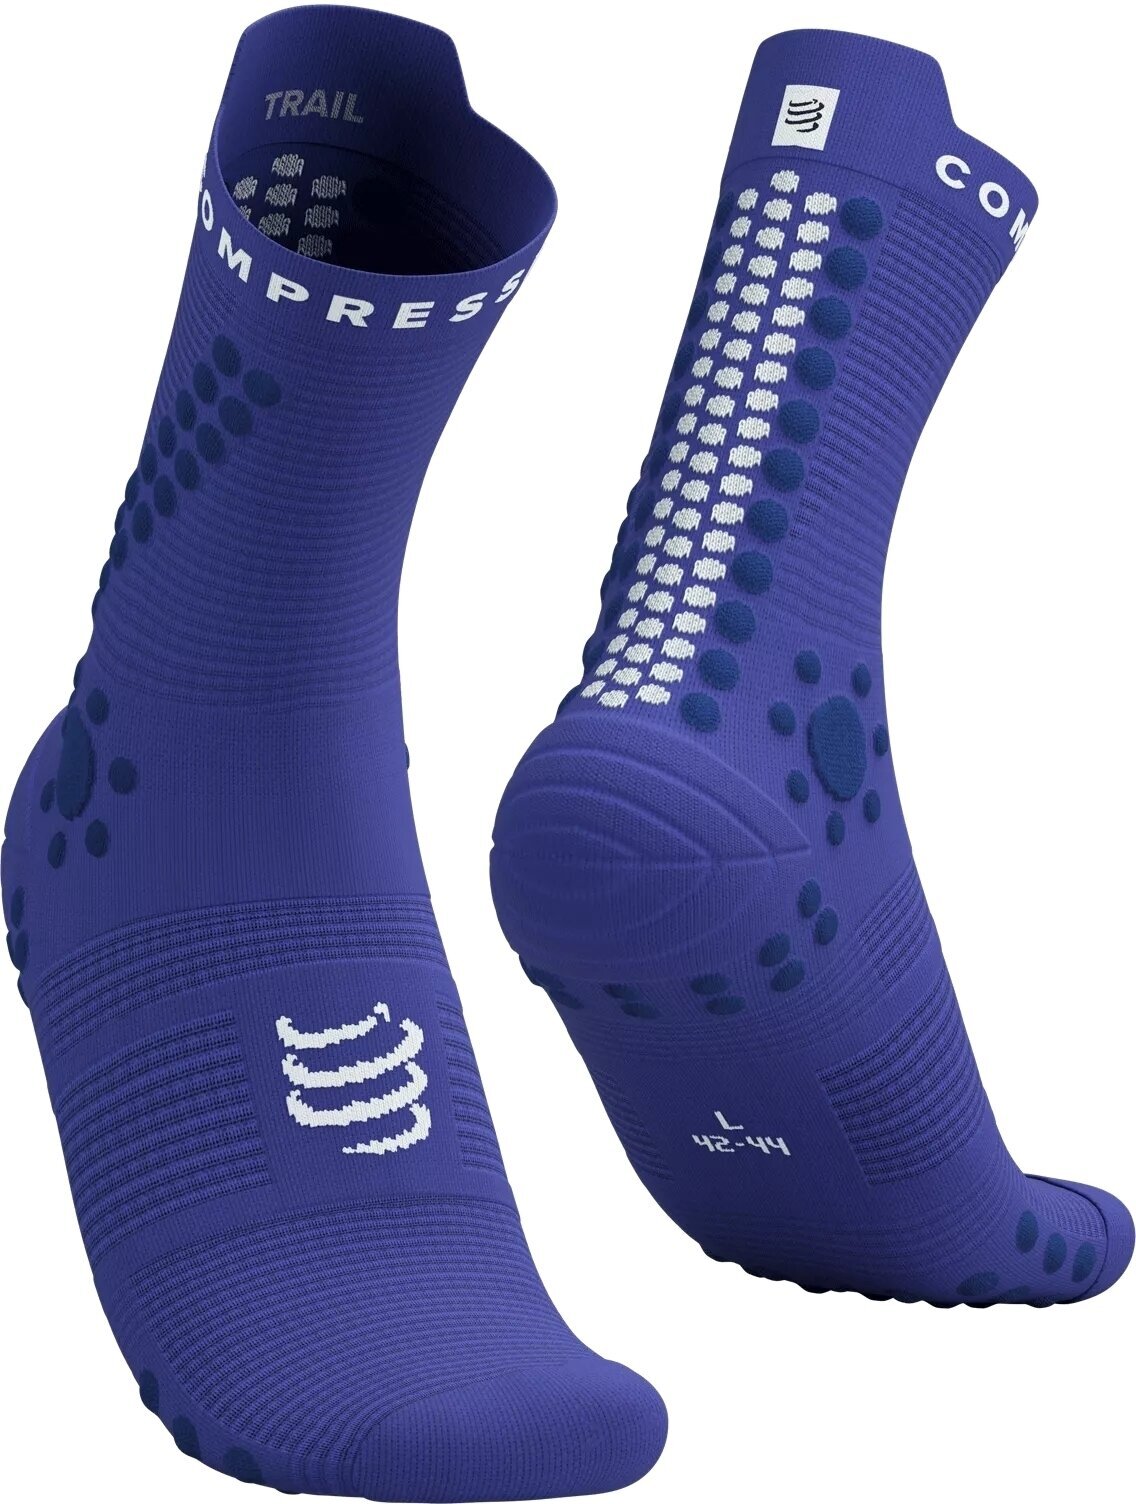 Bežecké ponožky
 Compressport Pro Racing Socks V4.0 Trail Dazzling Blue/Dress Blues/White T4 Bežecké ponožky